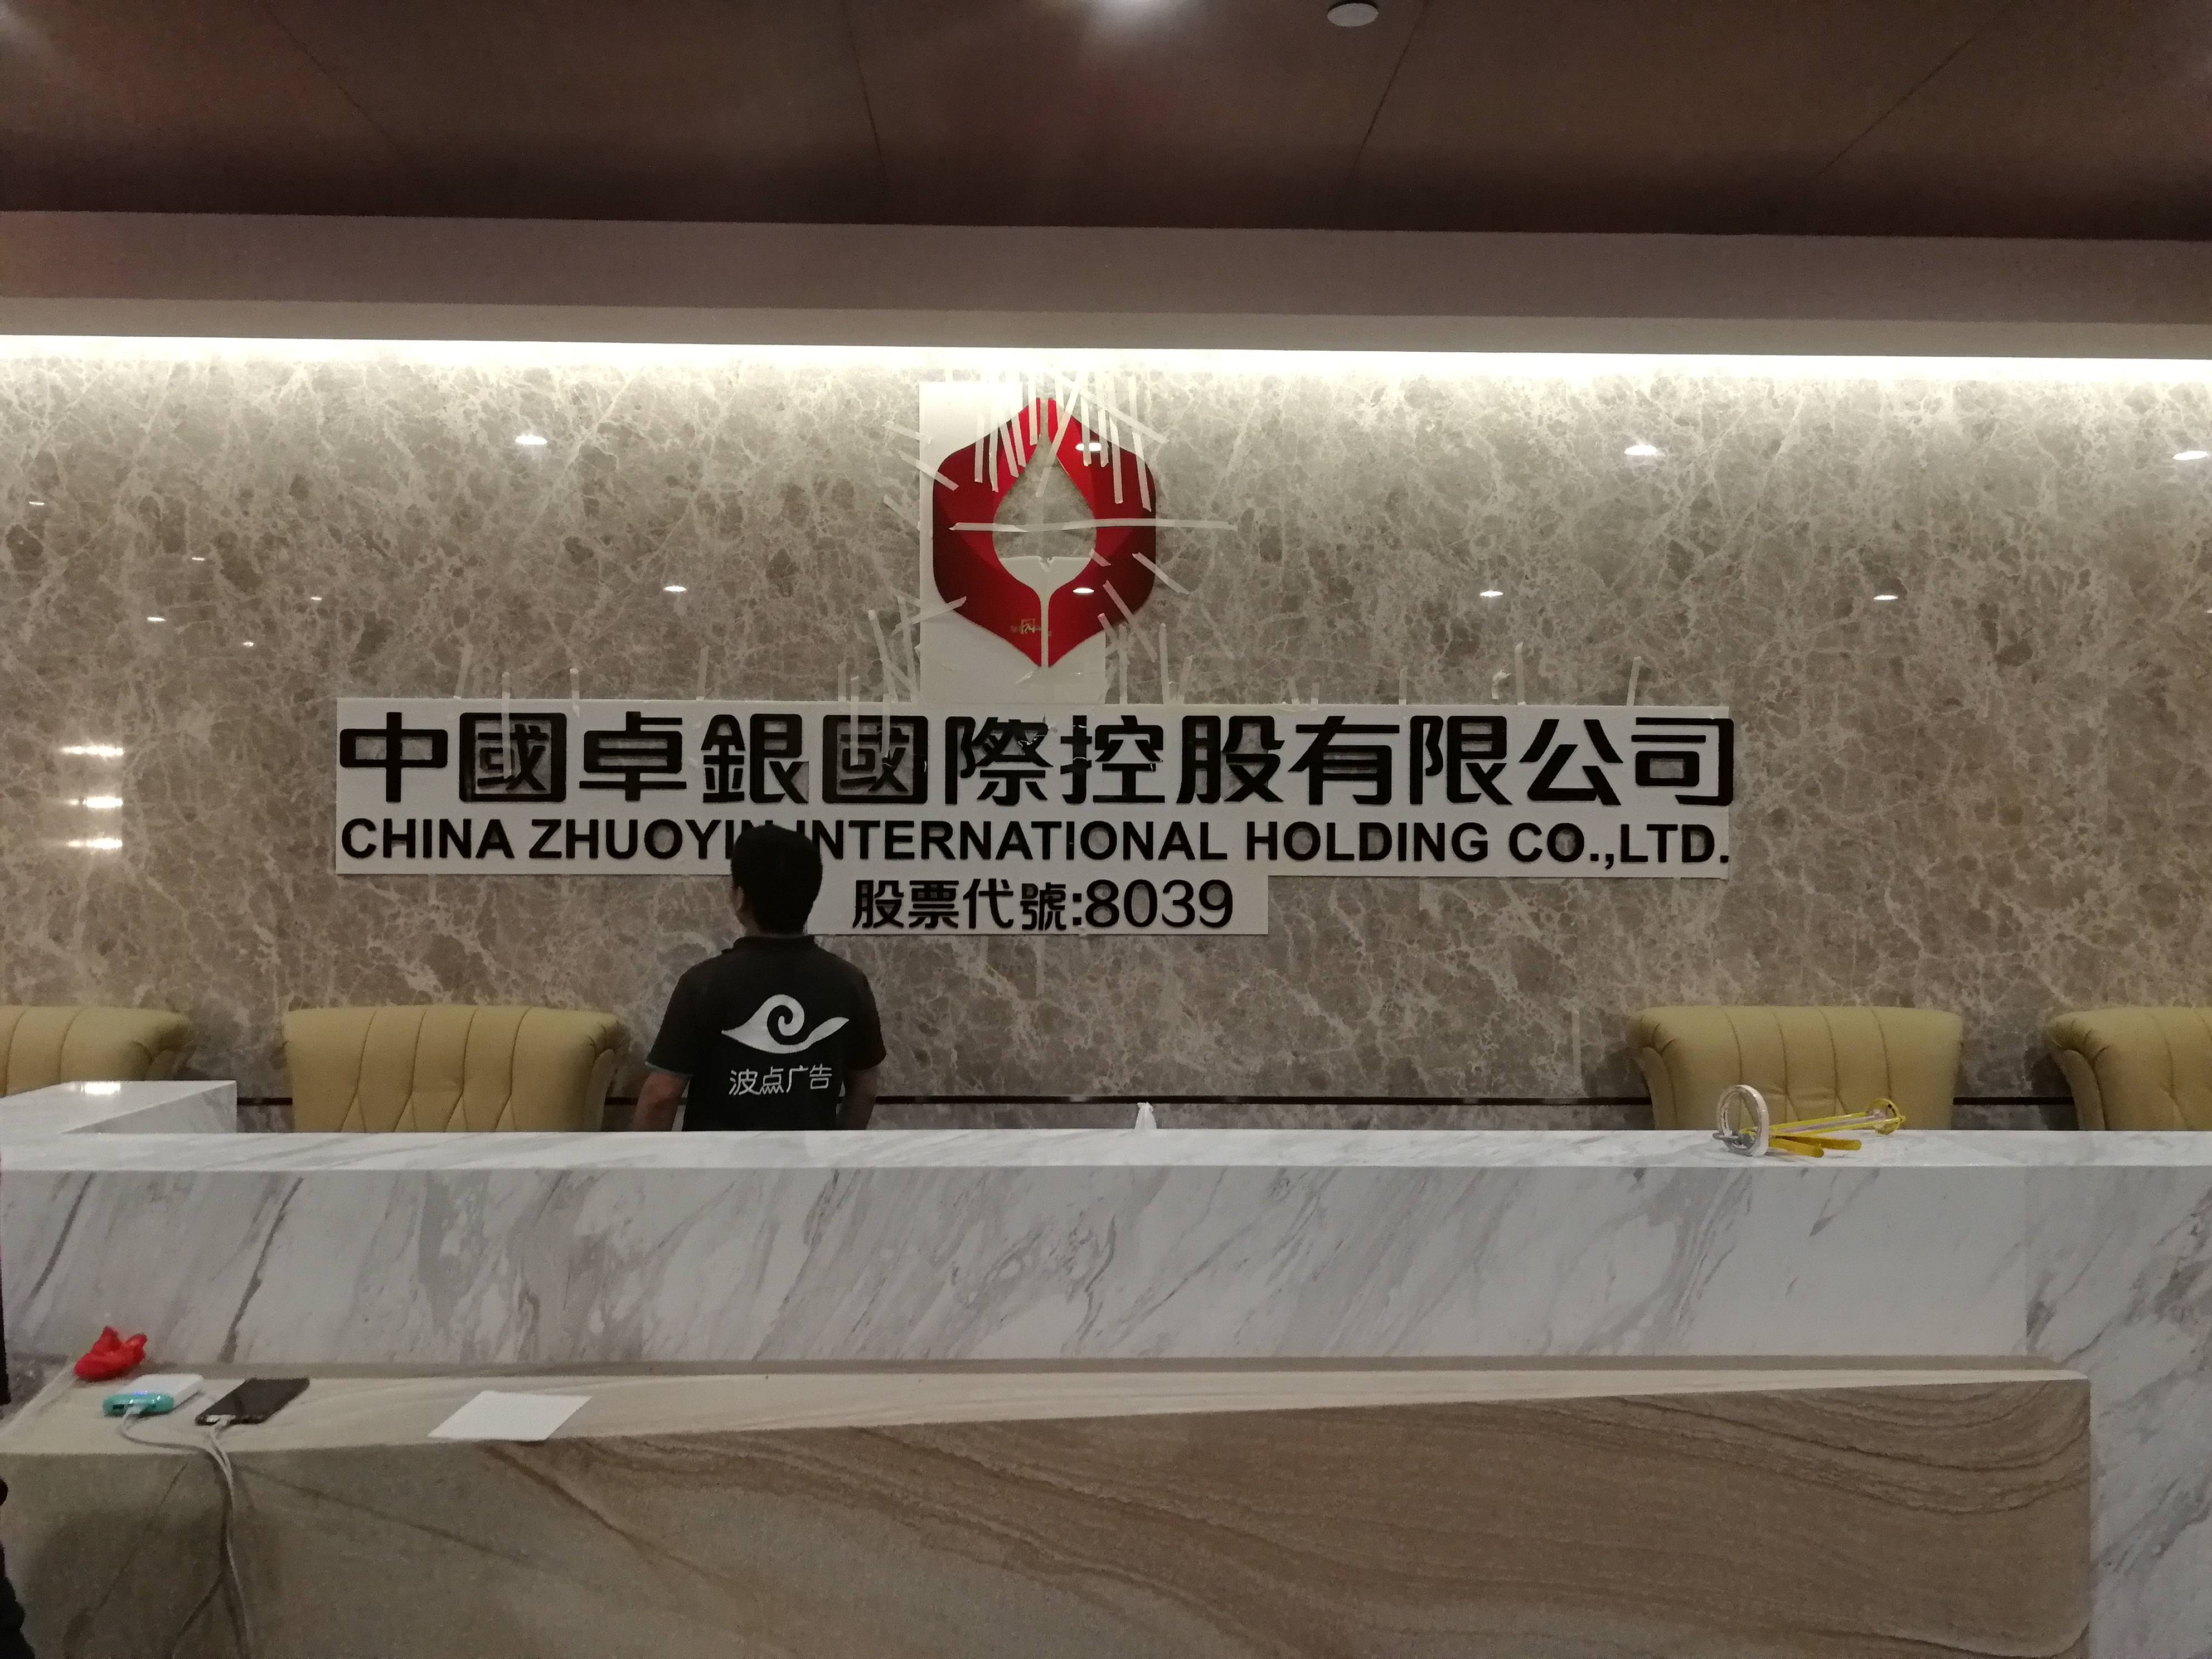 深圳公司logo,标识招牌,广告字拆除重新安装方法步骤